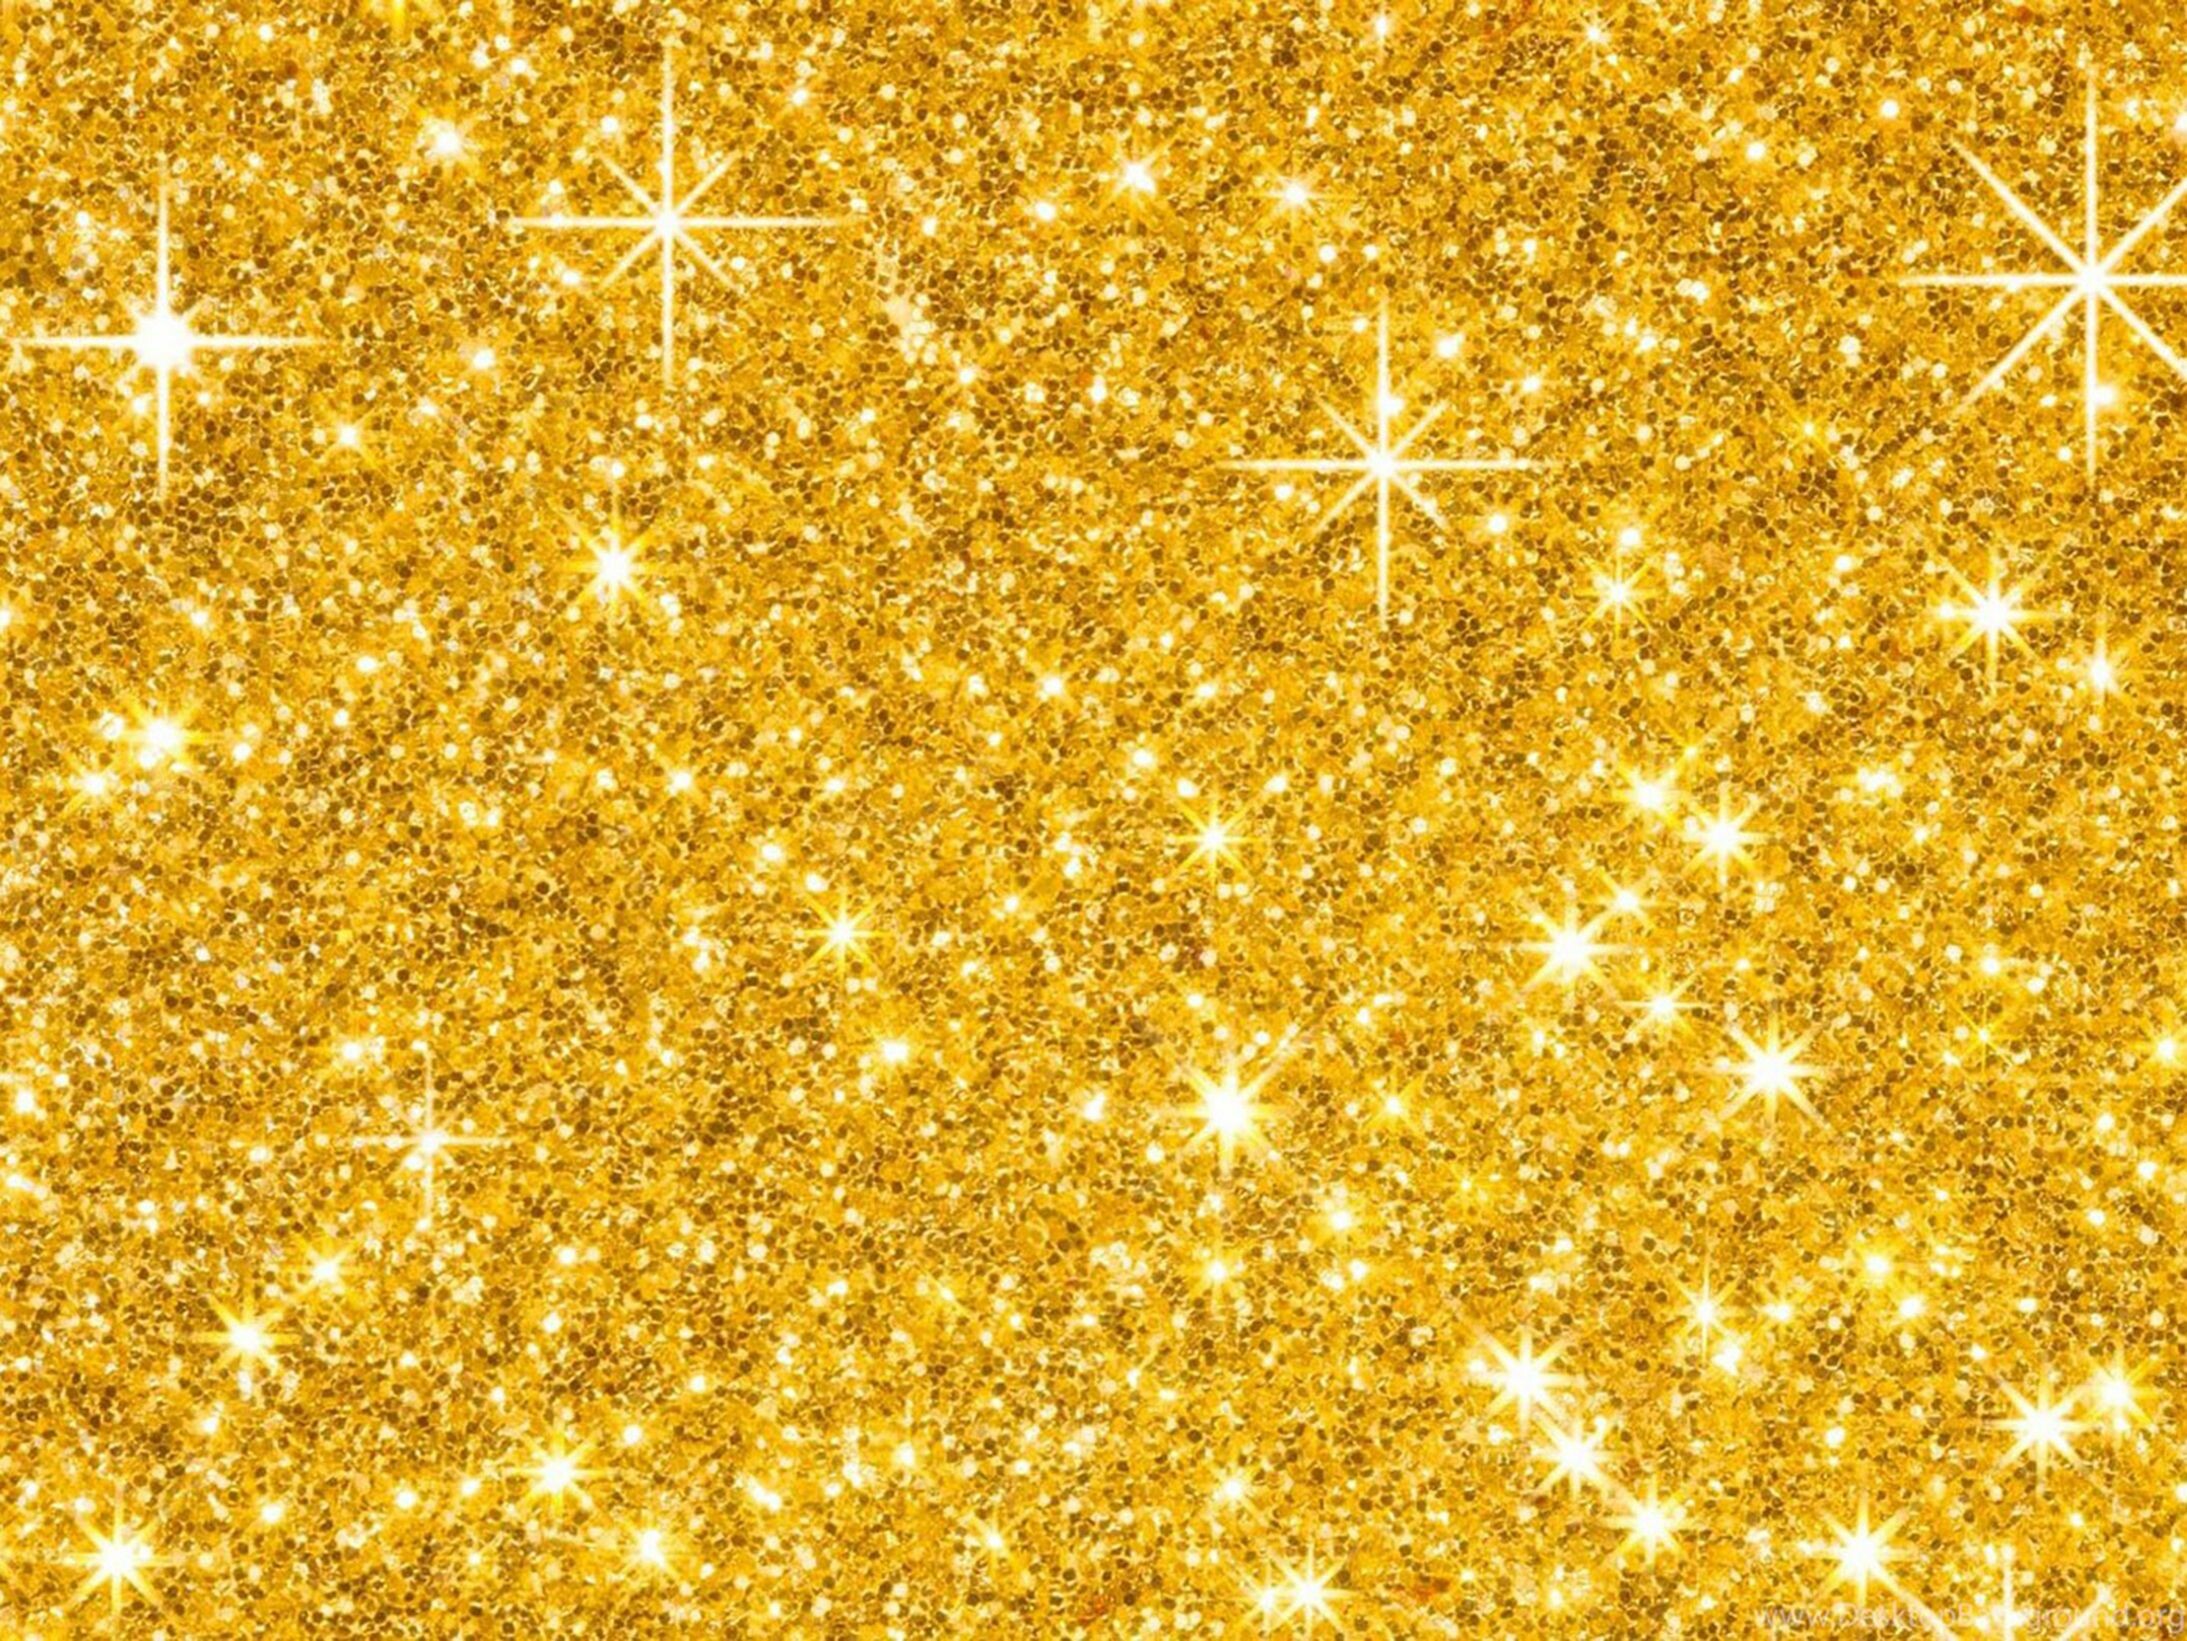 Glitter other, Watilde cedil atilde cedil djatilde laquo atilde laquo datilde laquo sign, Gold glitter wallpaper, Gold sparkle wallpaper, 2190x1650 HD Desktop